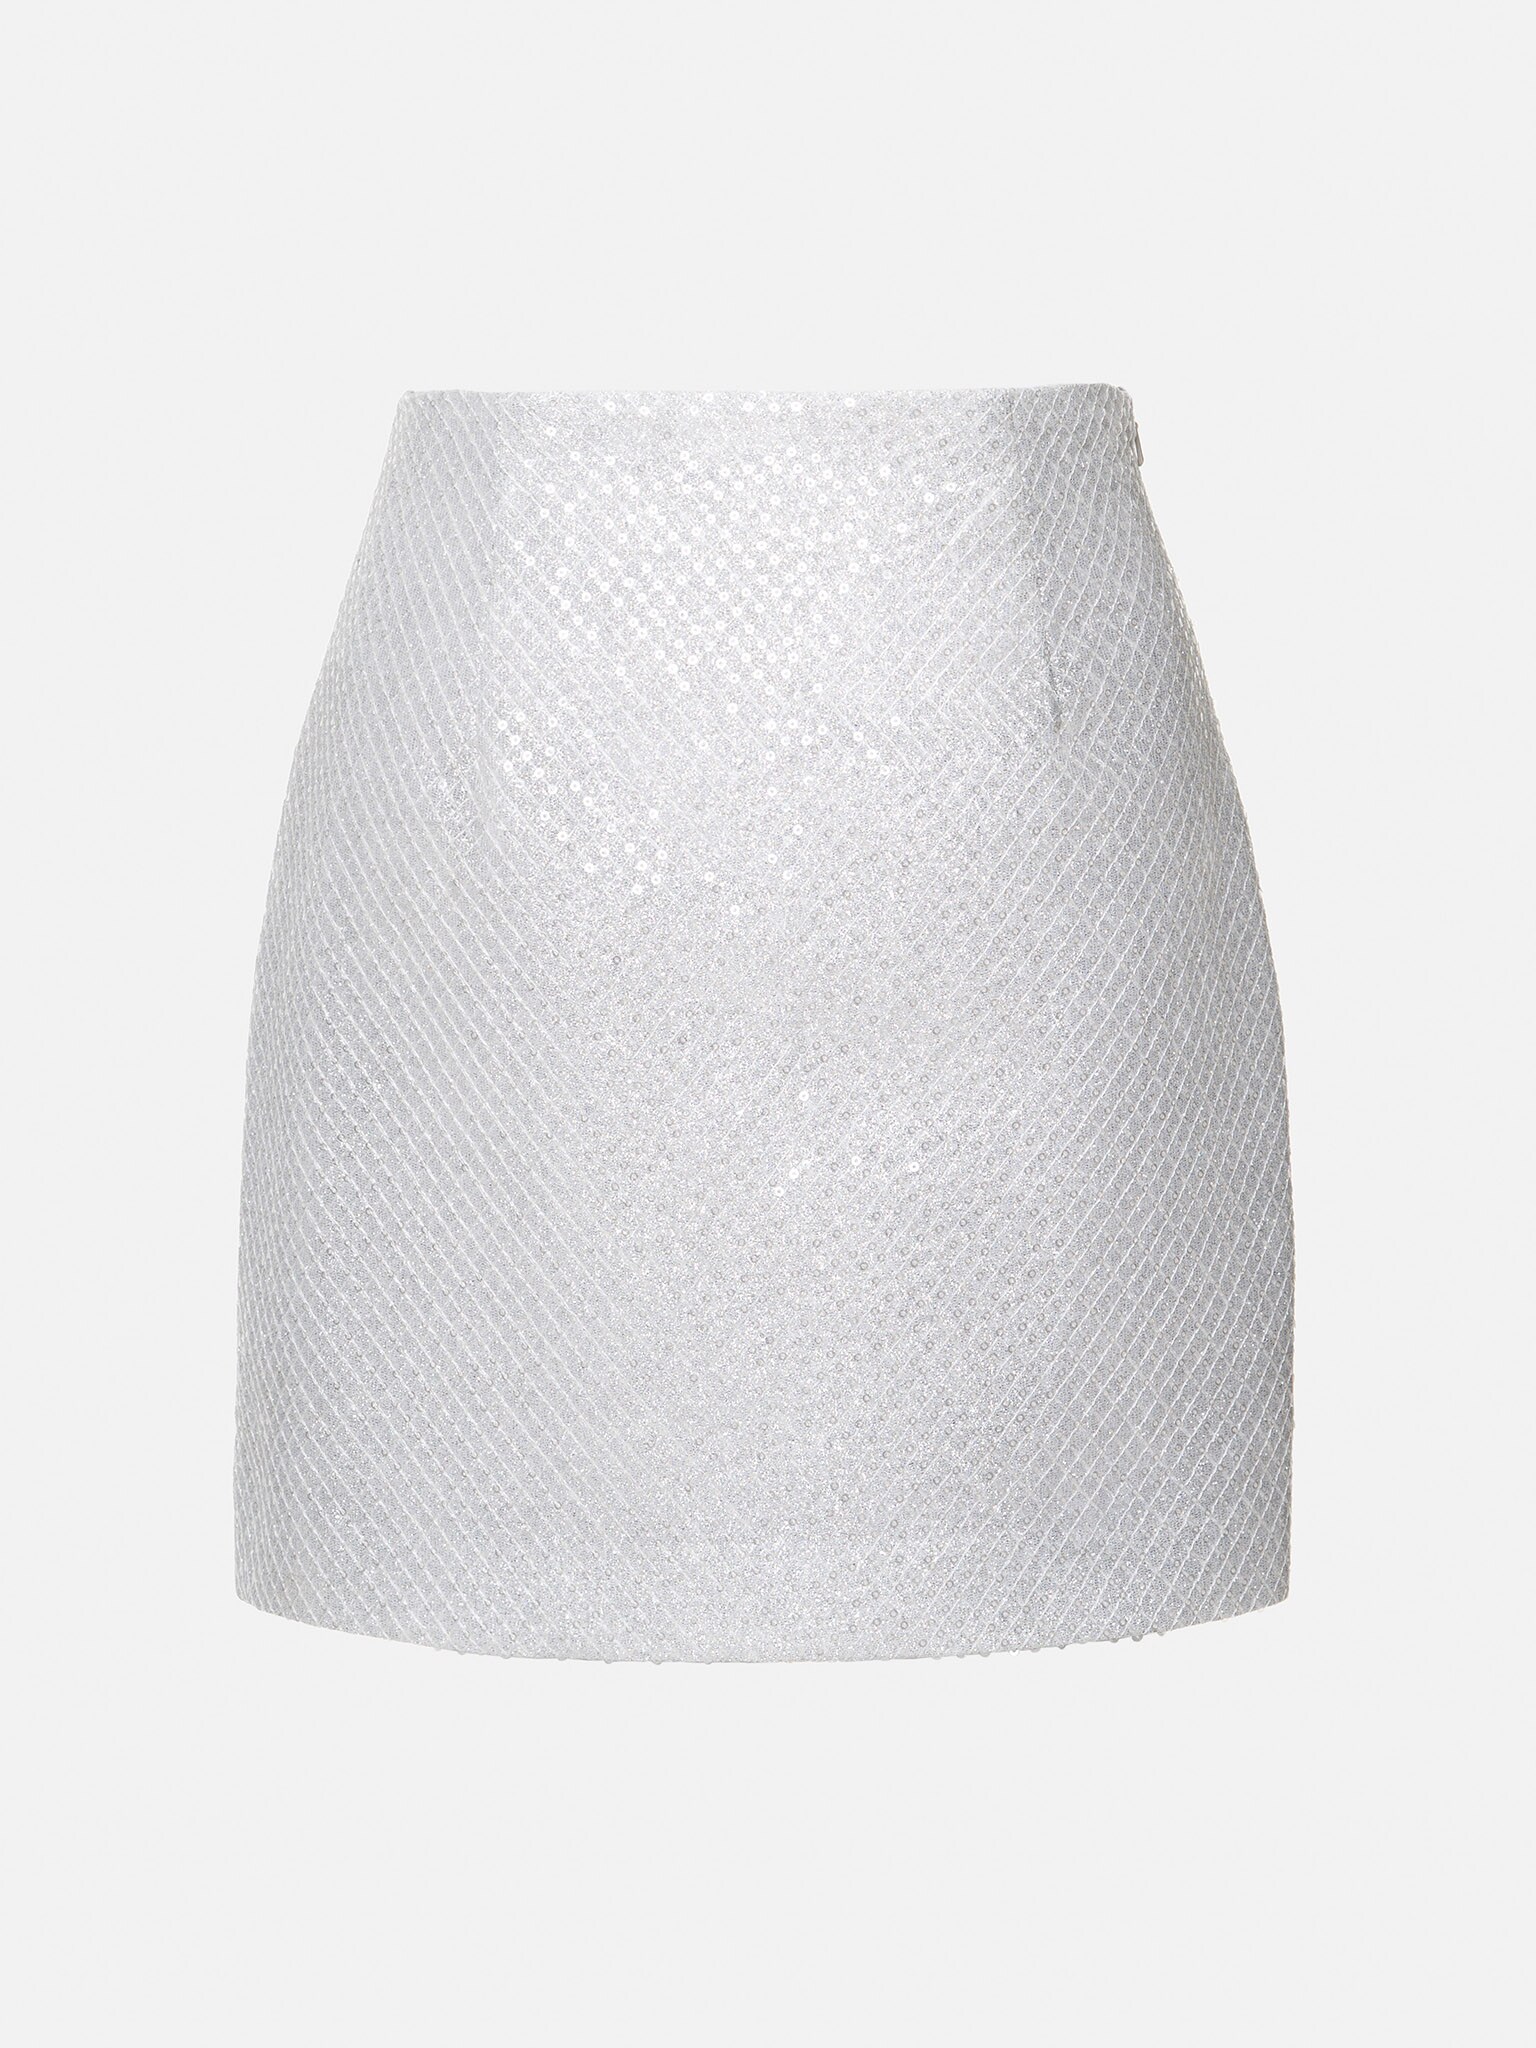 Sequined straight mini skirt :: LICHI - Online fashion store